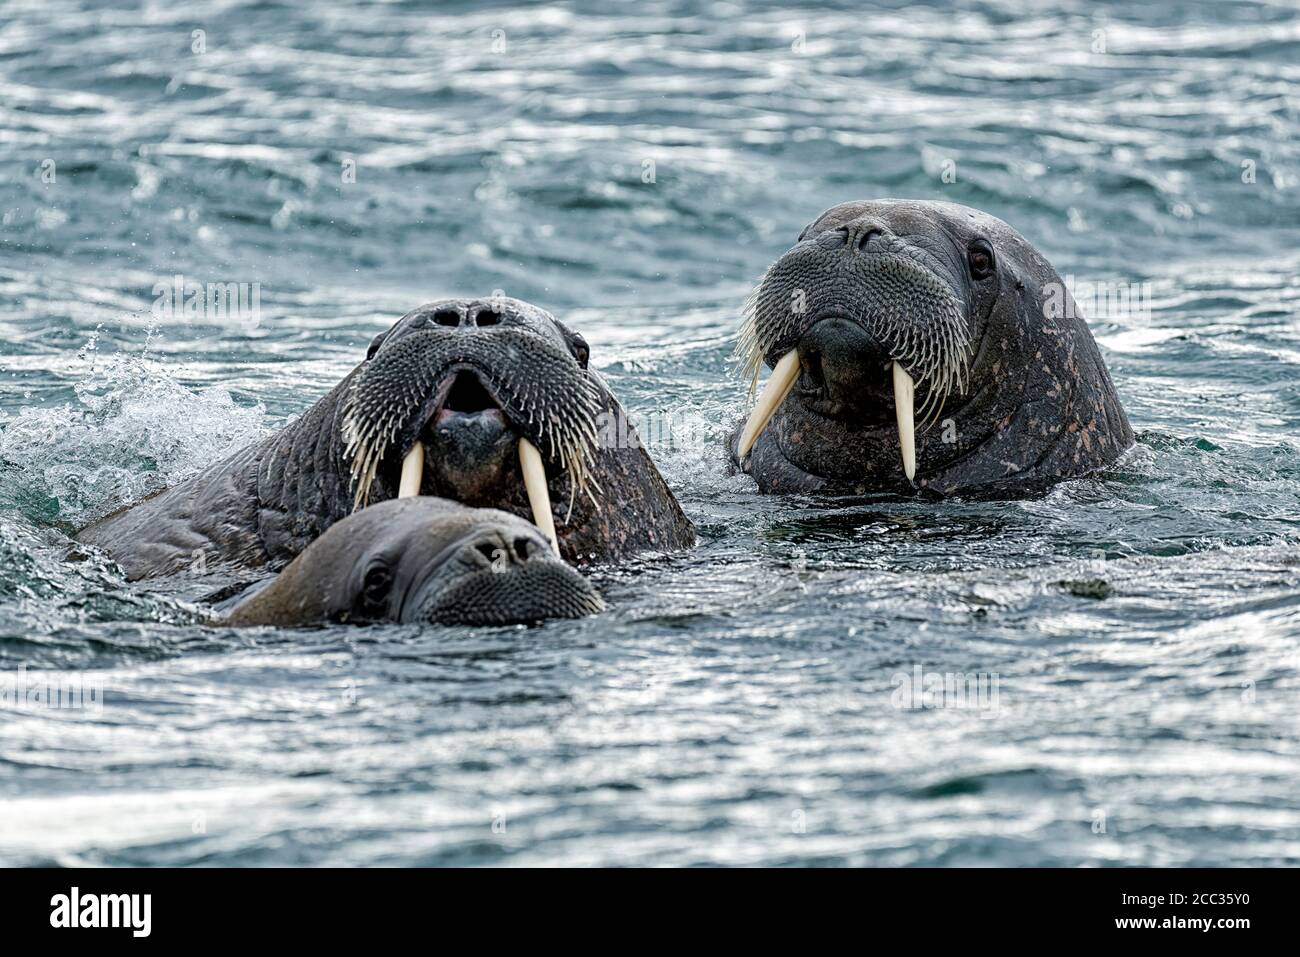 Group of Walrus (Odobenus rosmarus),  in sea at Torellnesfjellet, Nordaustlandet, Svalbard, Norway Stock Photo